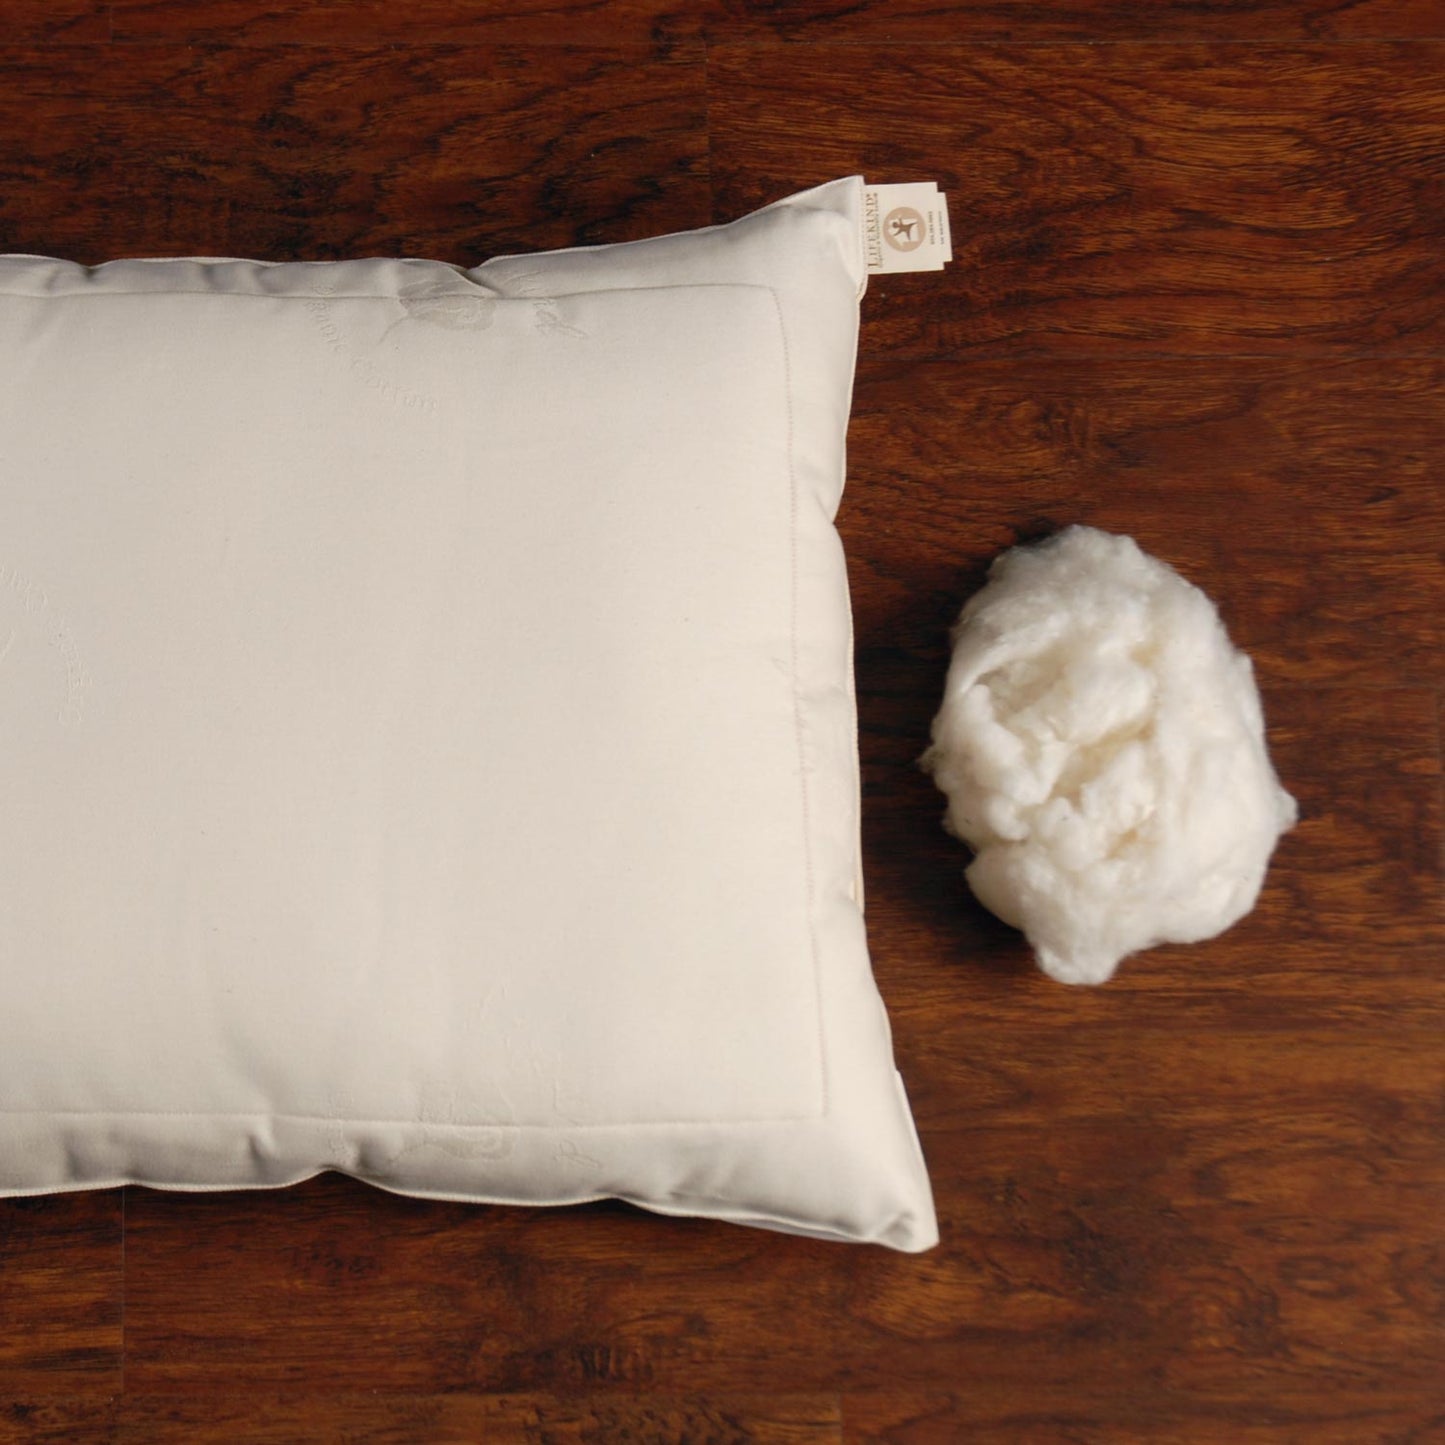 Certified Organic Cotton Pillow — Euro